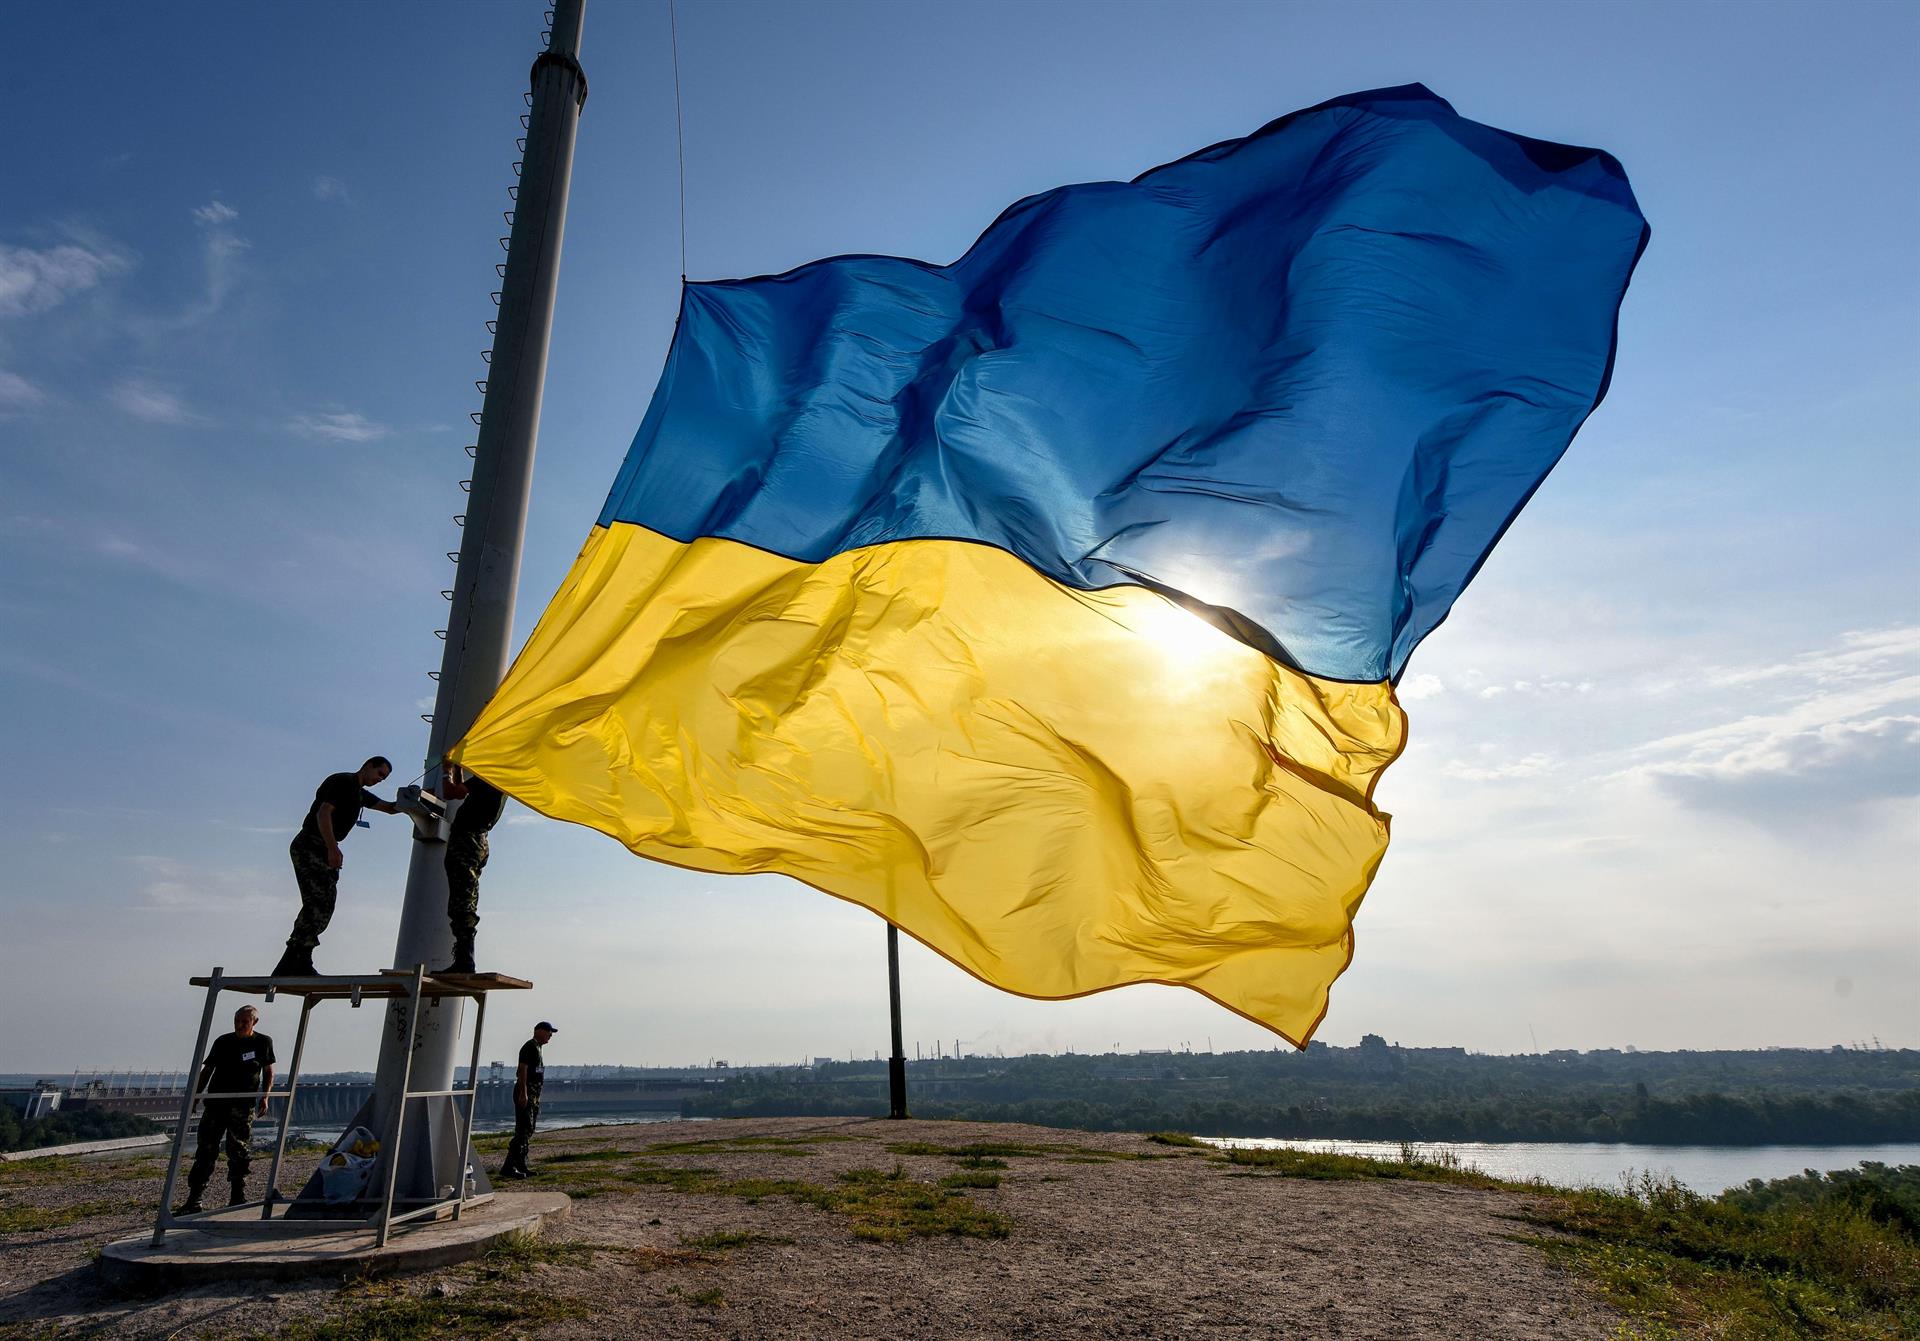 Ucrania sufre un ciberataque masivo contra las páginas oficiales del Gobierno